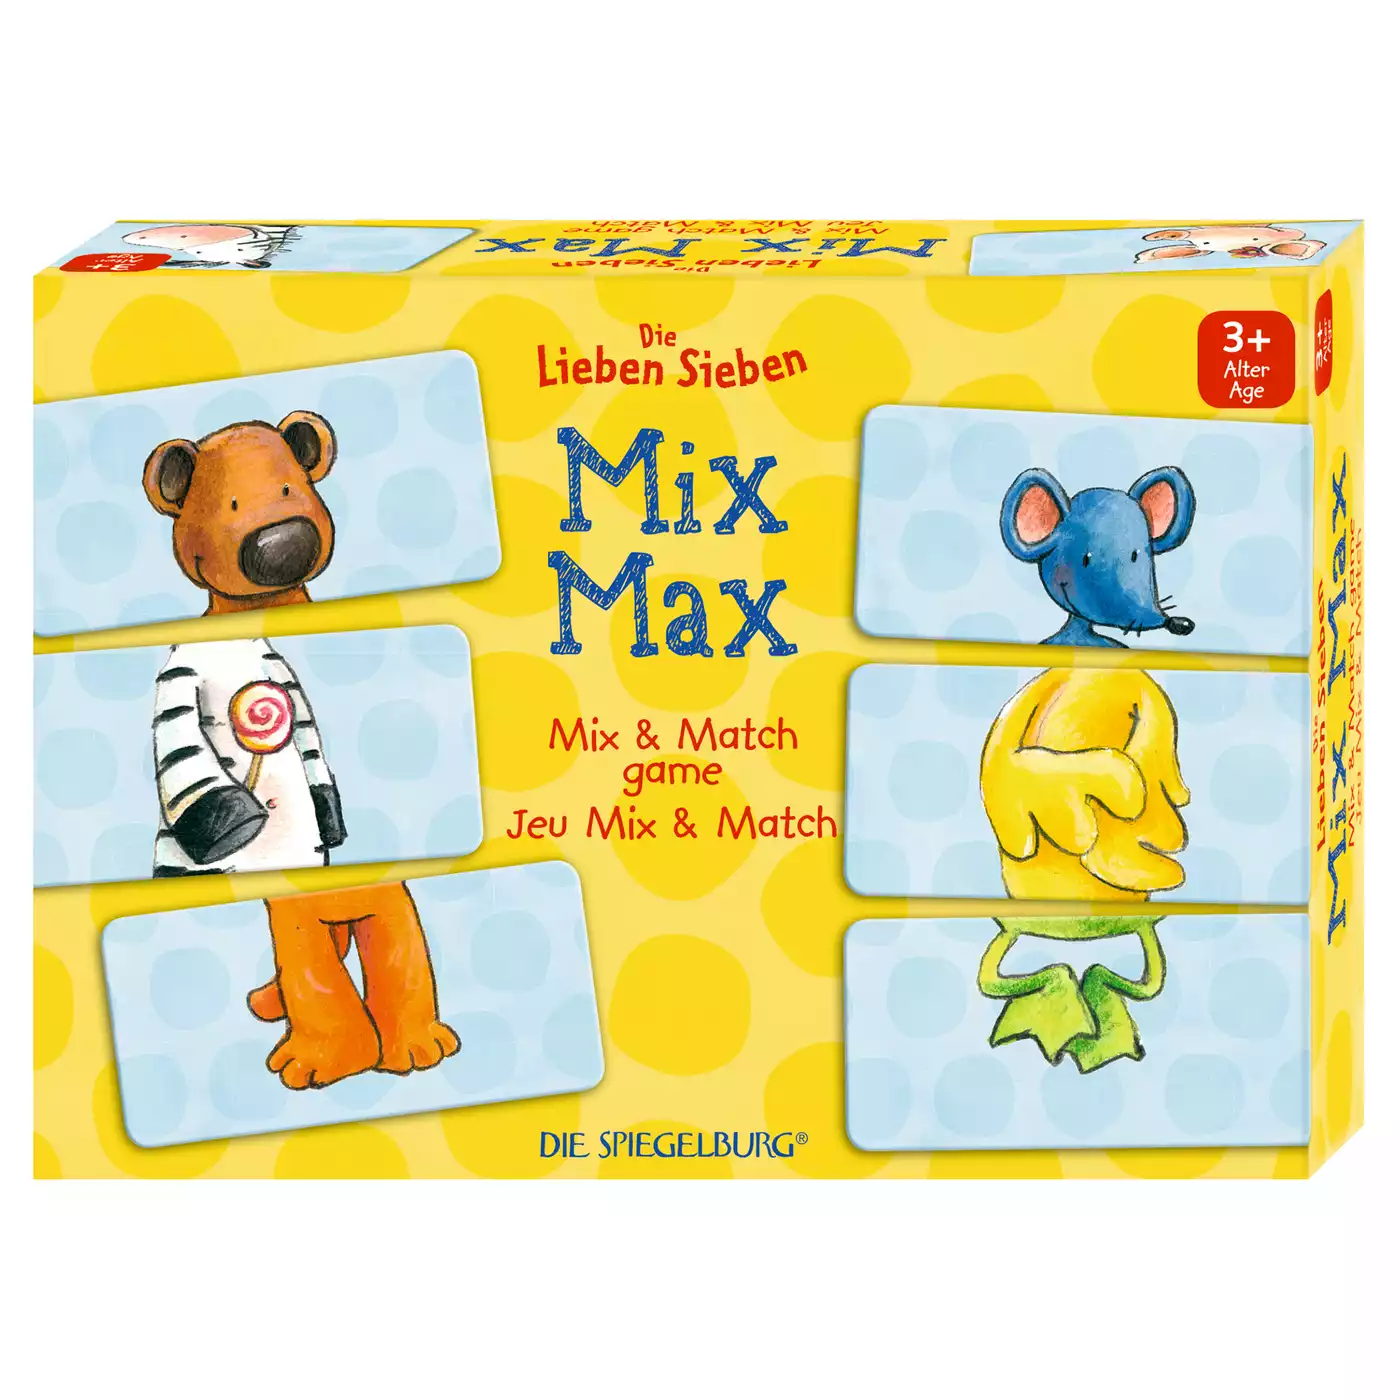 Mix-Max Spiel DIE SPIEGELBURG 2000574527802 1